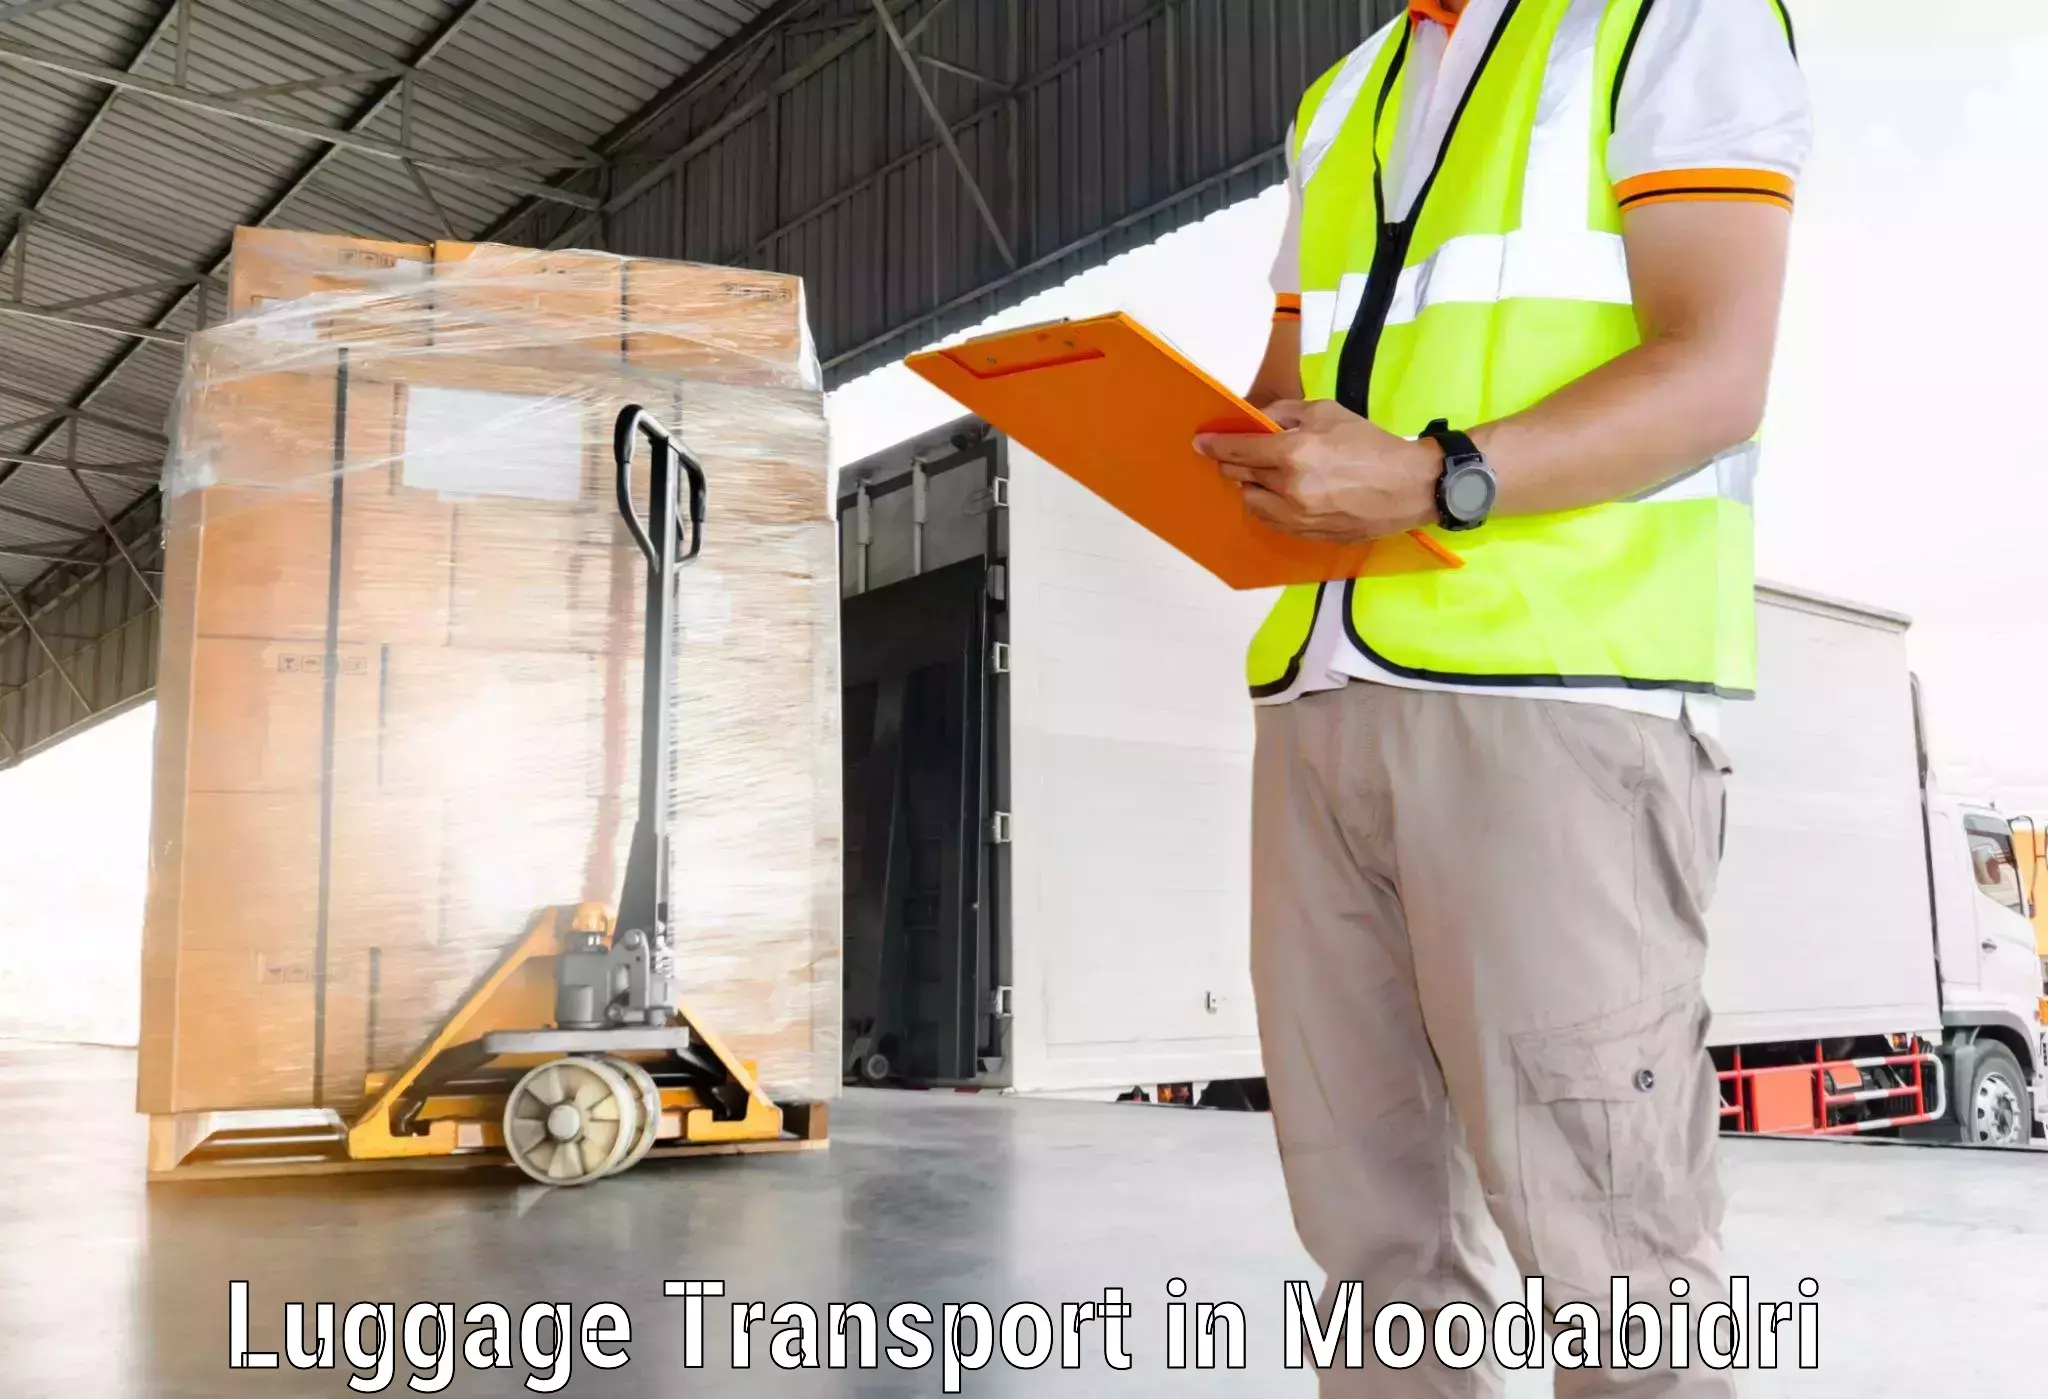 Group luggage shipping in Moodabidri